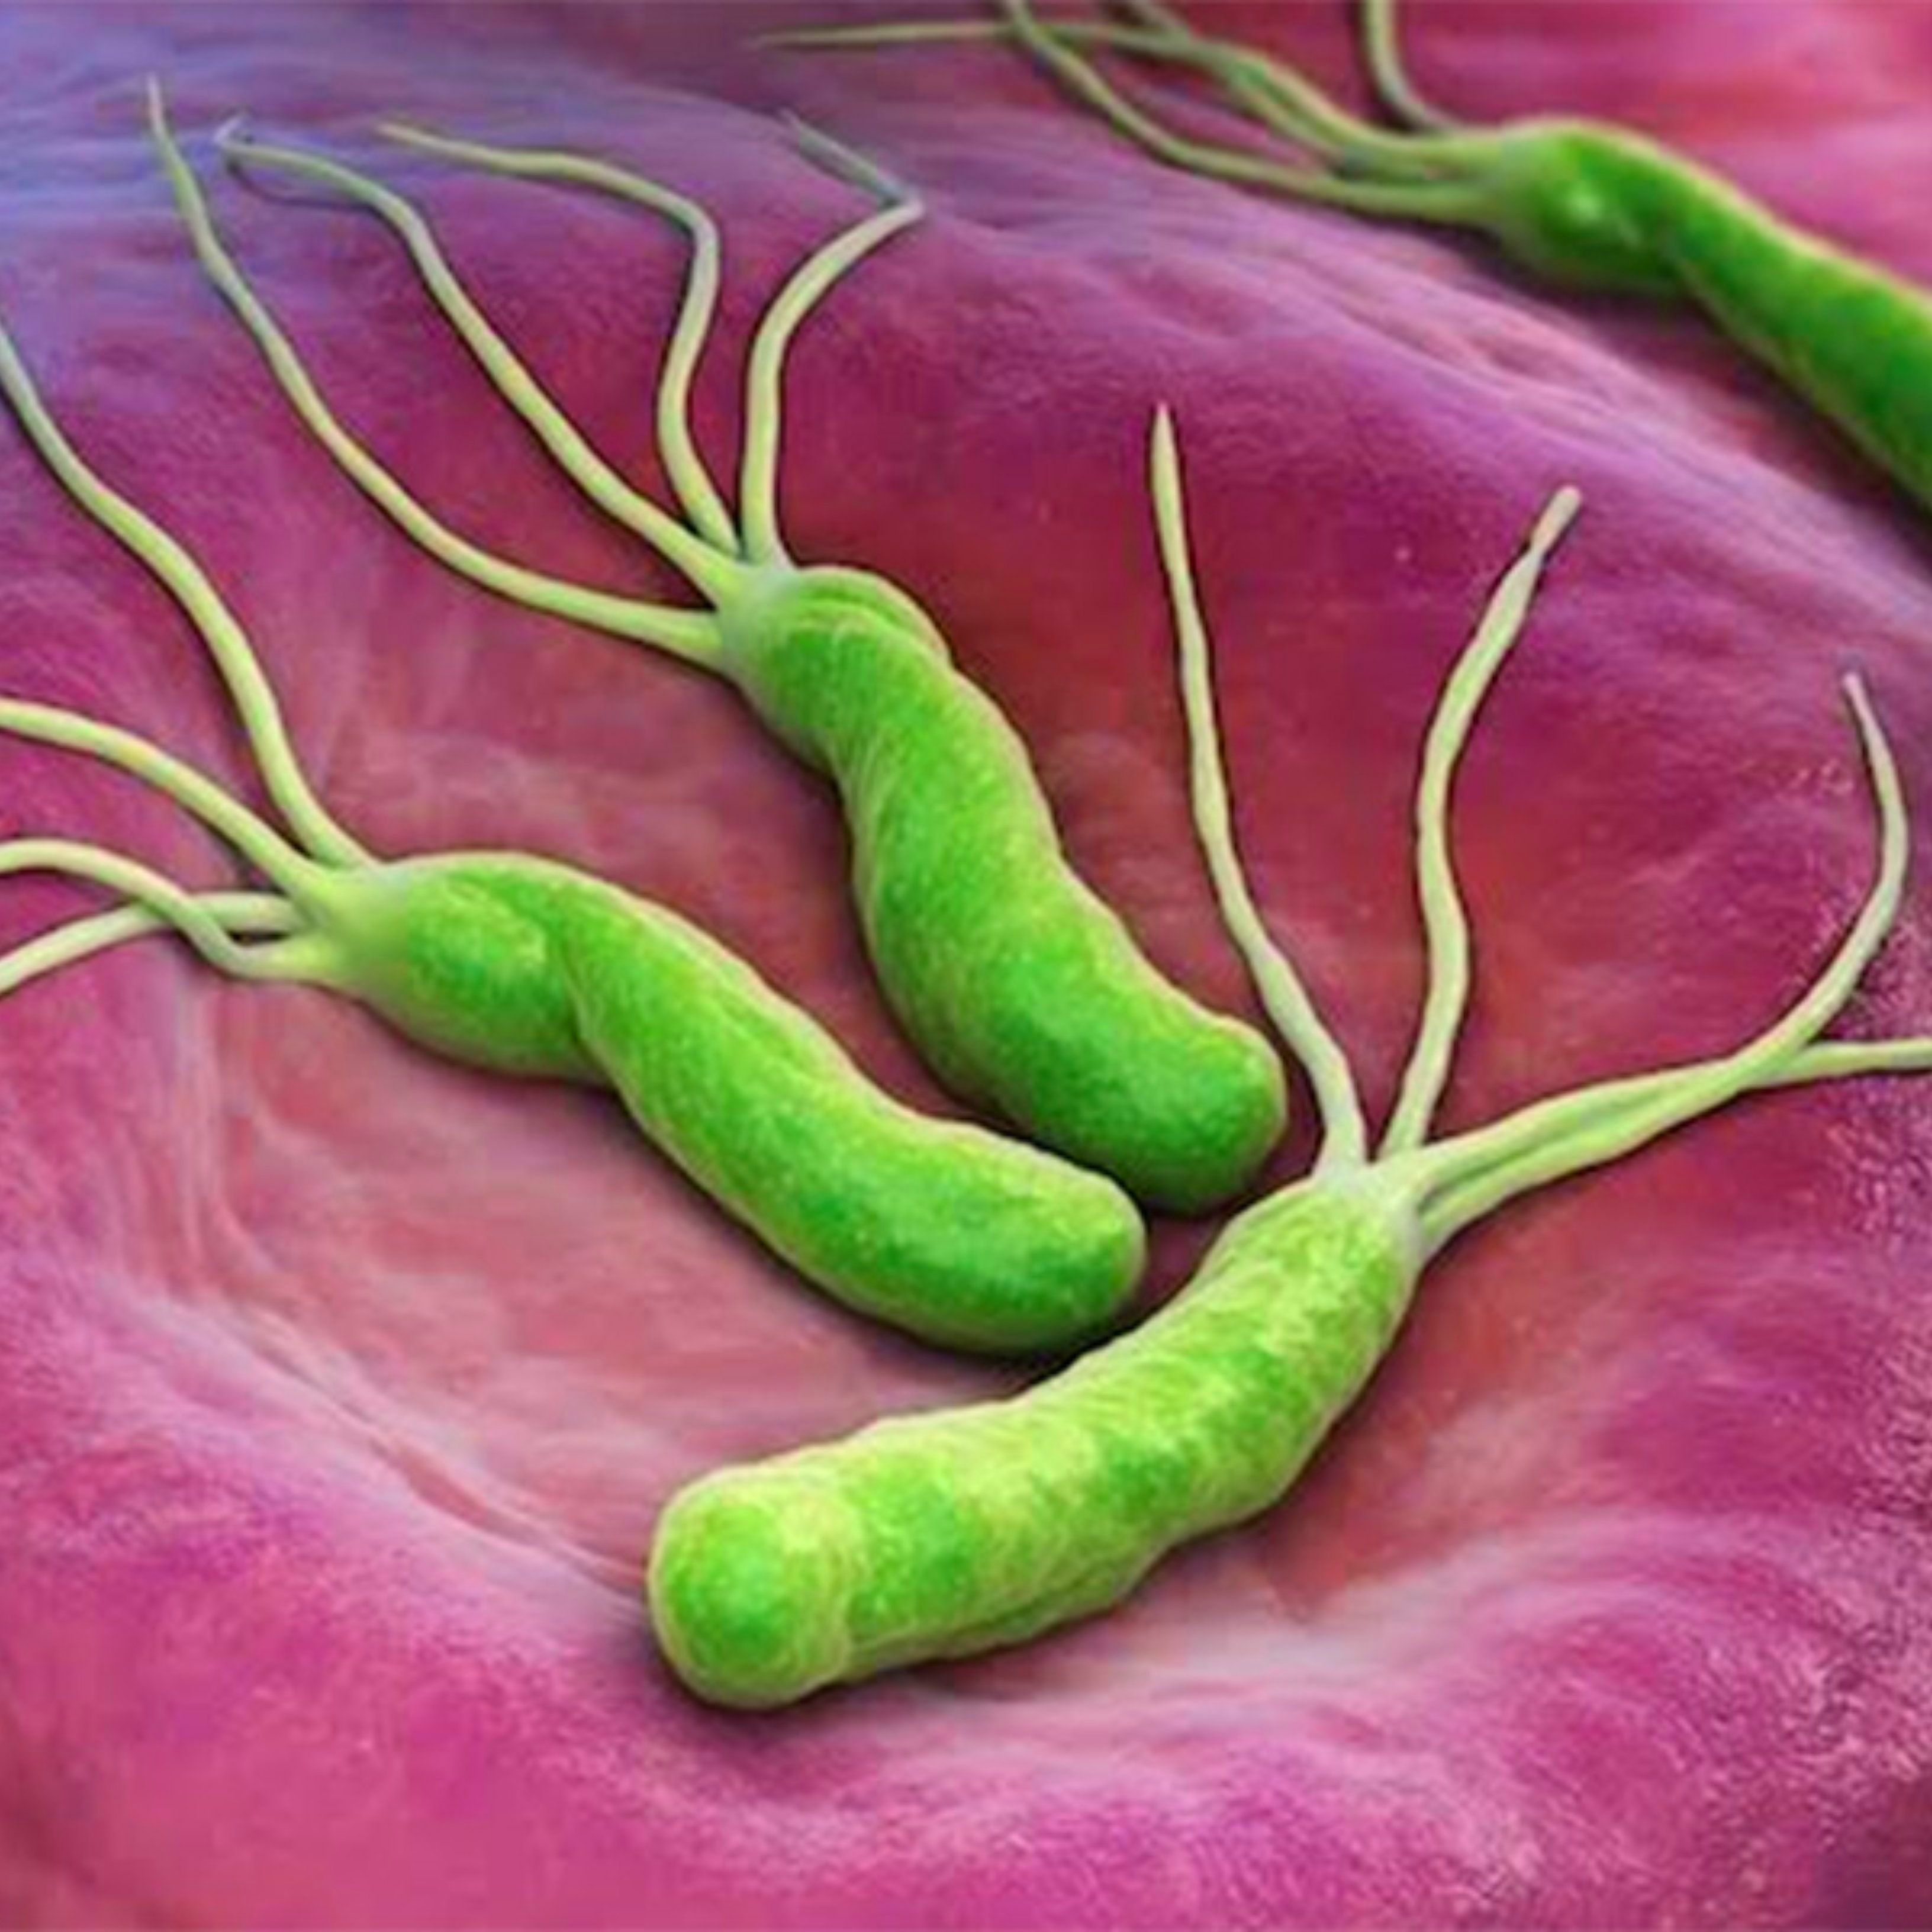 Причины появления бактерий в желудке. Хеликобактер хеликобактер пилори. Бактерии хеликобактер пилори (Helicobacter pylori). Хеликобактер пилори в микроскопе. Бактерия гастрита хеликобактер.